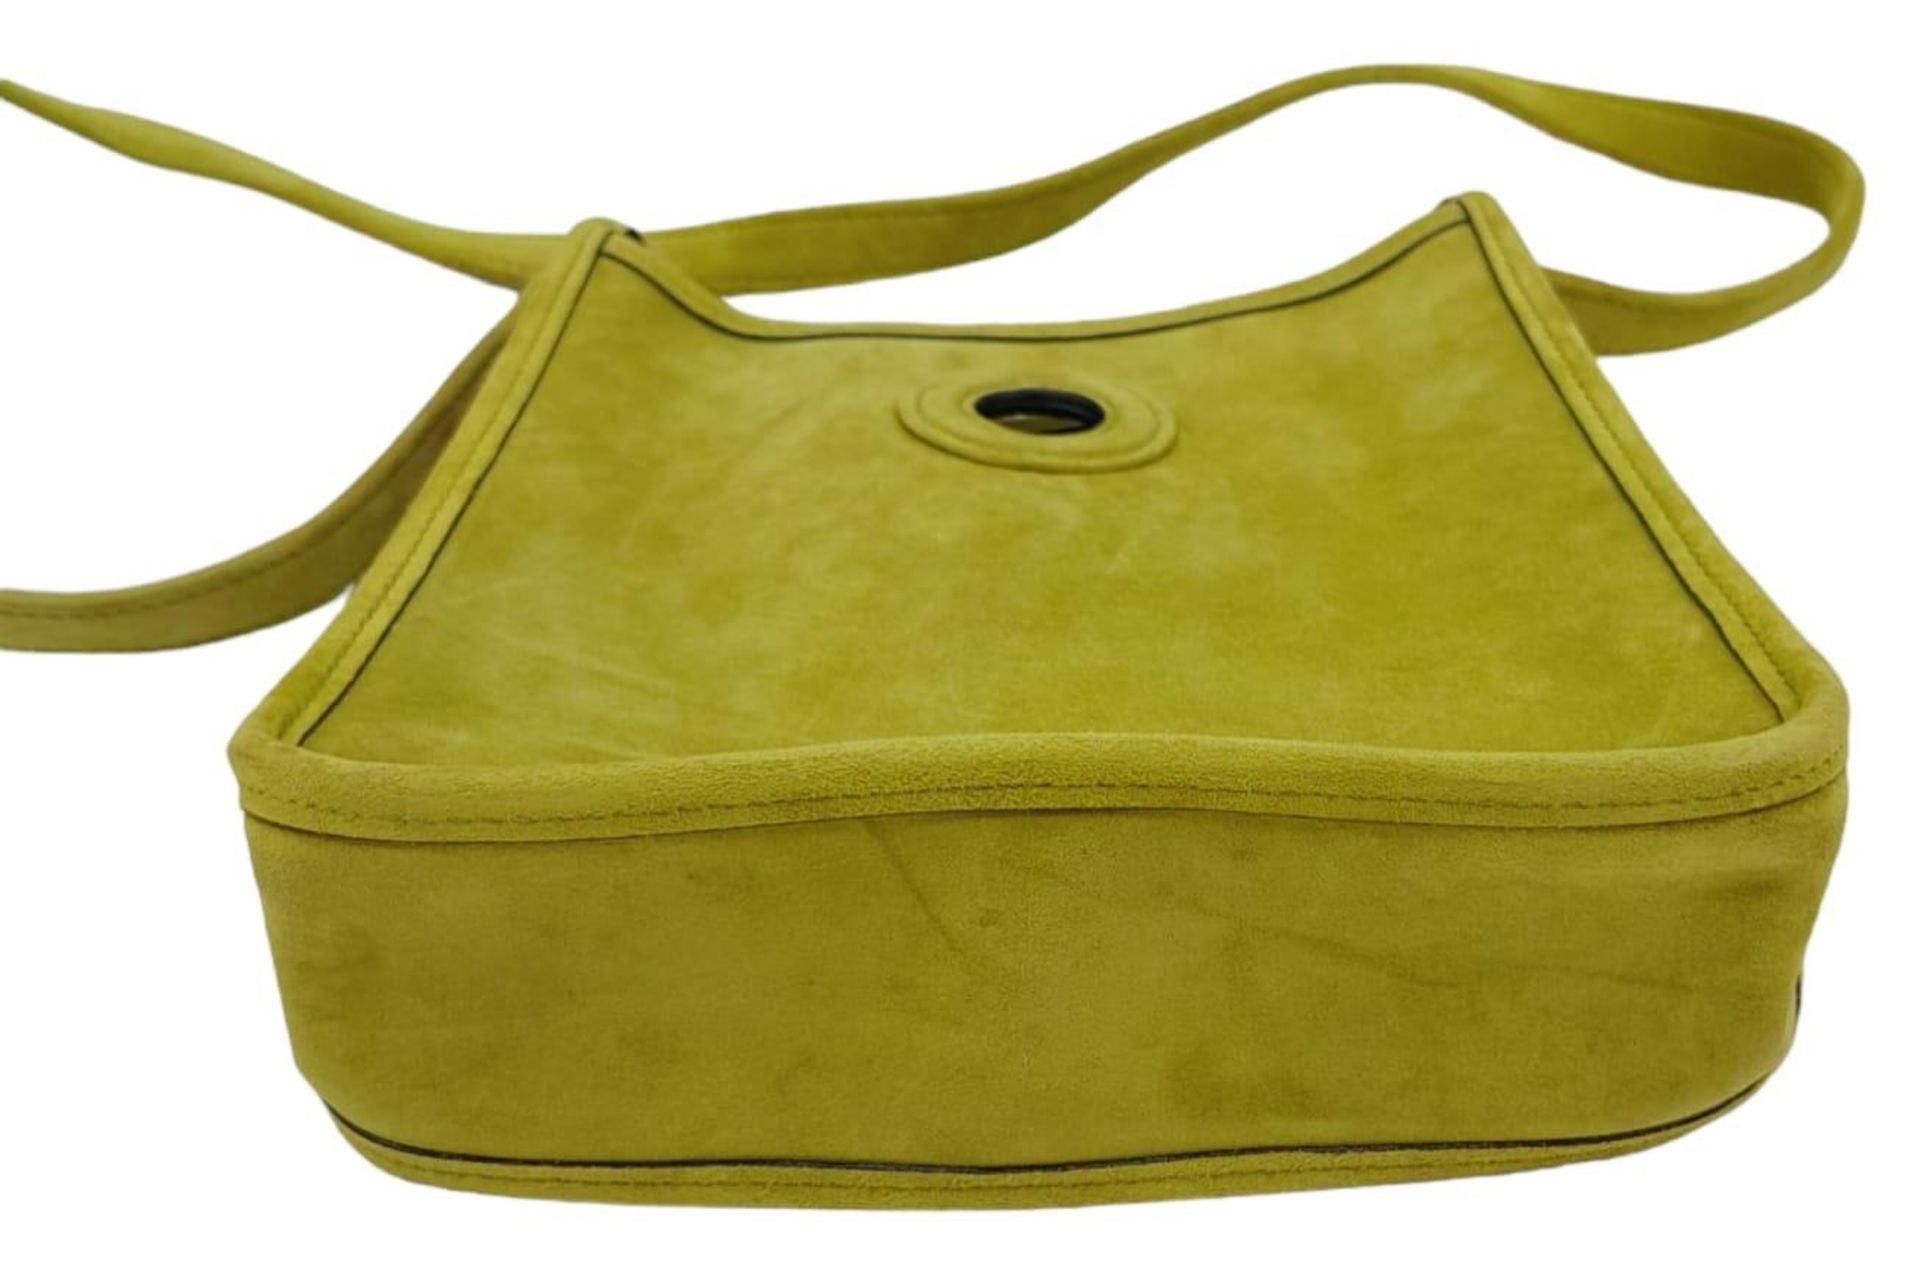 A Vintage Hermes Green Suede Shoulder Bag. Olive green suede exterior with gold-tone furniture. - Image 6 of 8